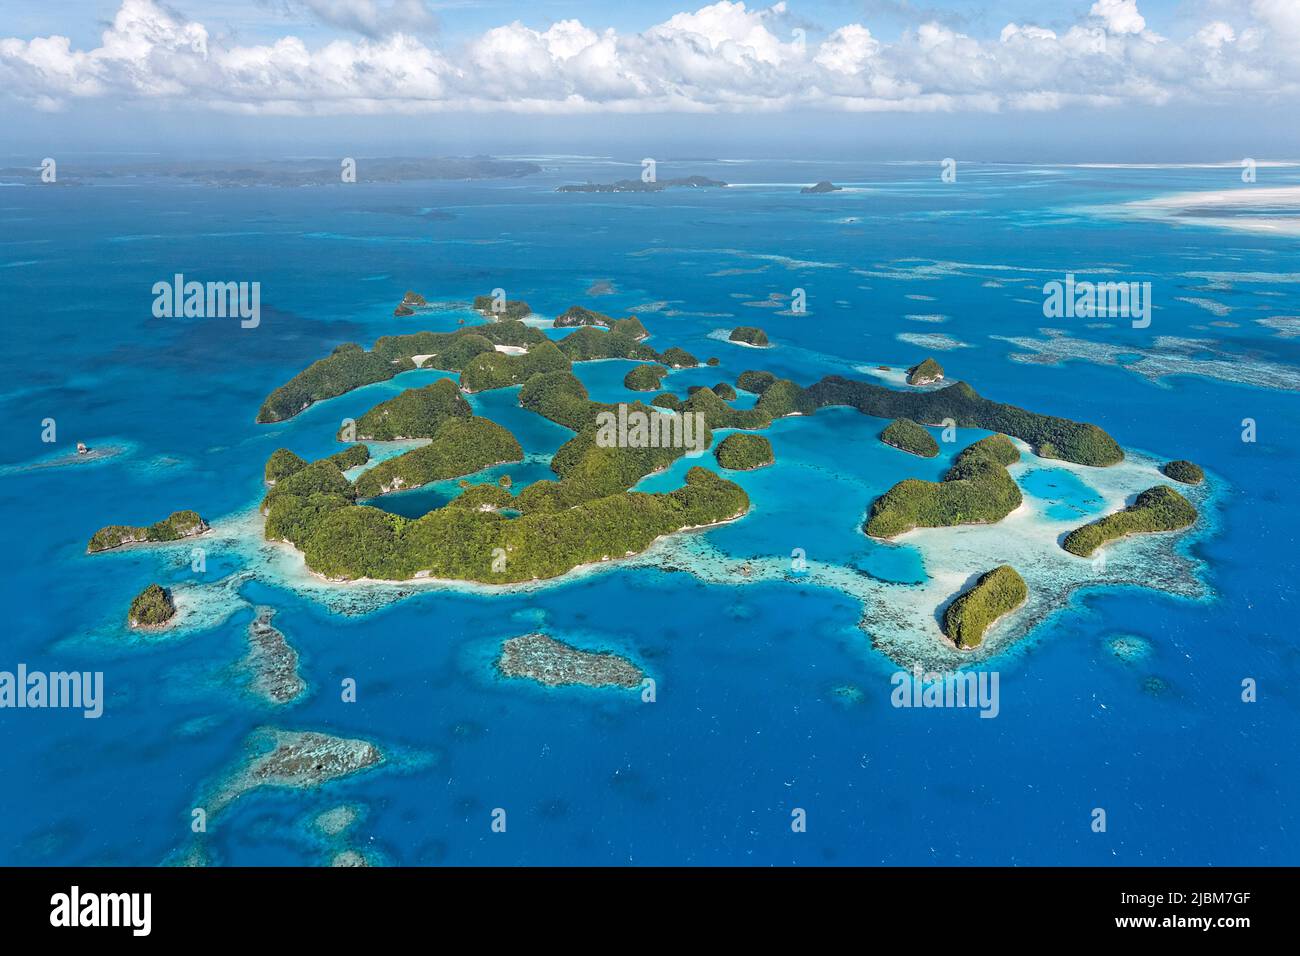 Vue aérienne, îles et récifs coralliens des Palaos, Micronésie, océan Pacifique, Asie Banque D'Images